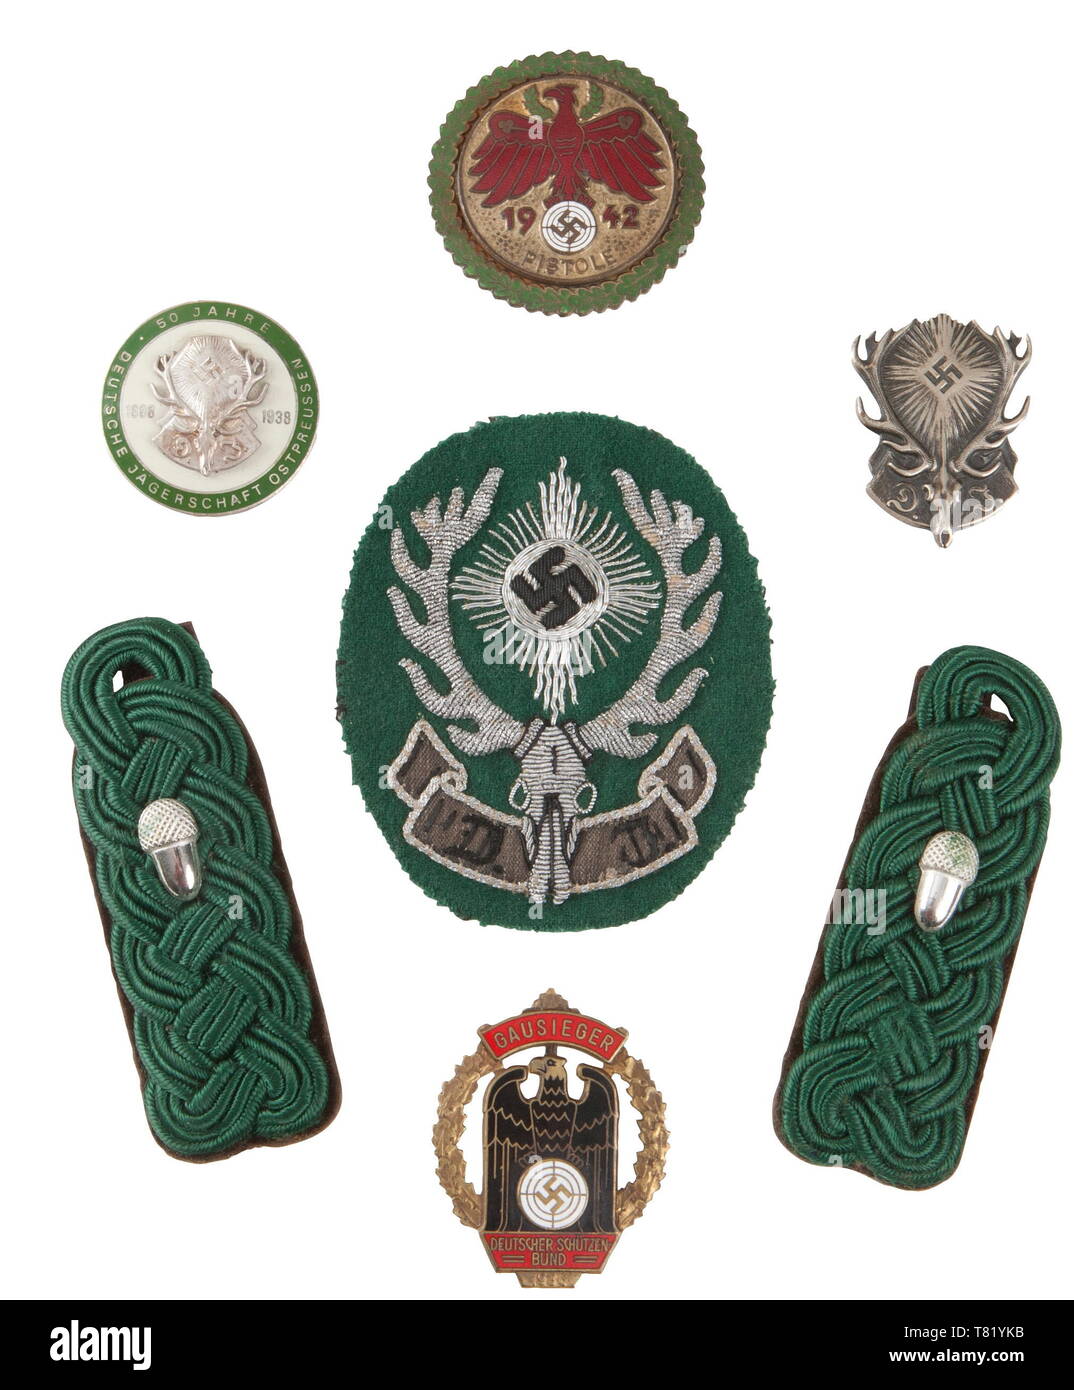 Une collection d'accessoires pour la chasse, la foresterie, la prise de  vue. Association de chasse Ostpreußen (D.J.), un badge officiel de la  foresterie, l'épaule de tir militaire award pour 1942, Gausieger 1936